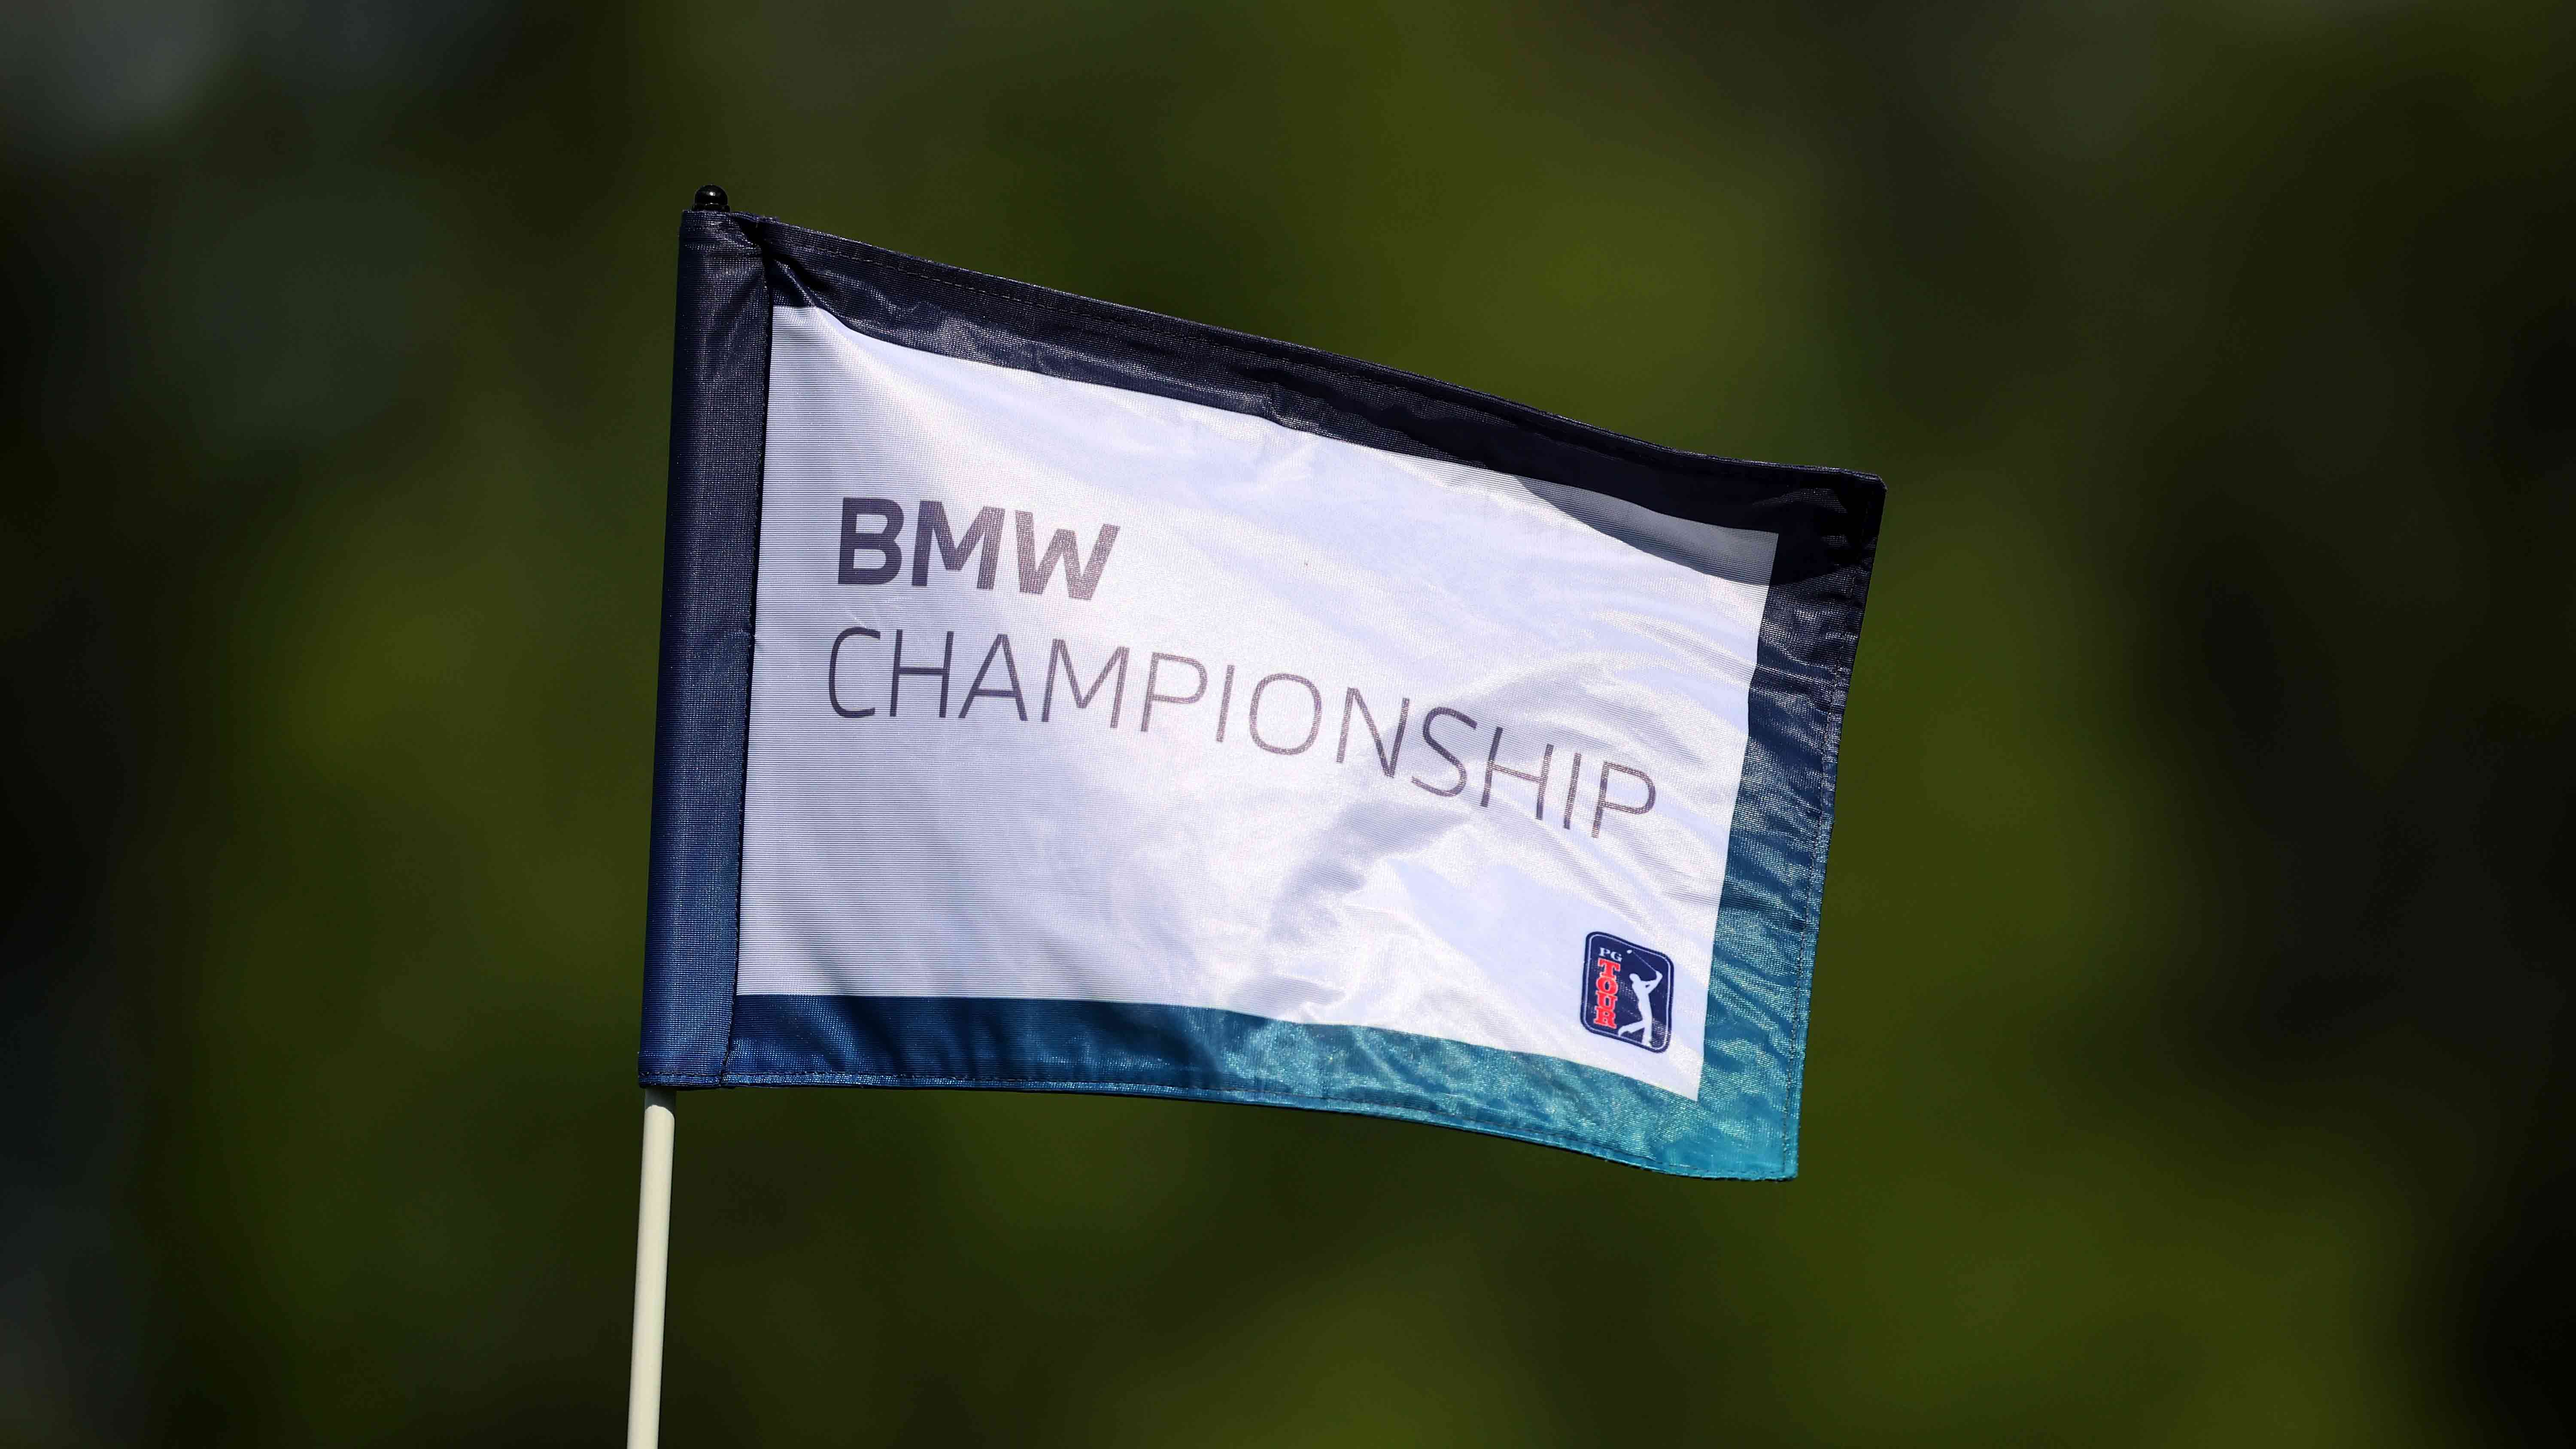 2023 BMW Championship first round delayed due to rain